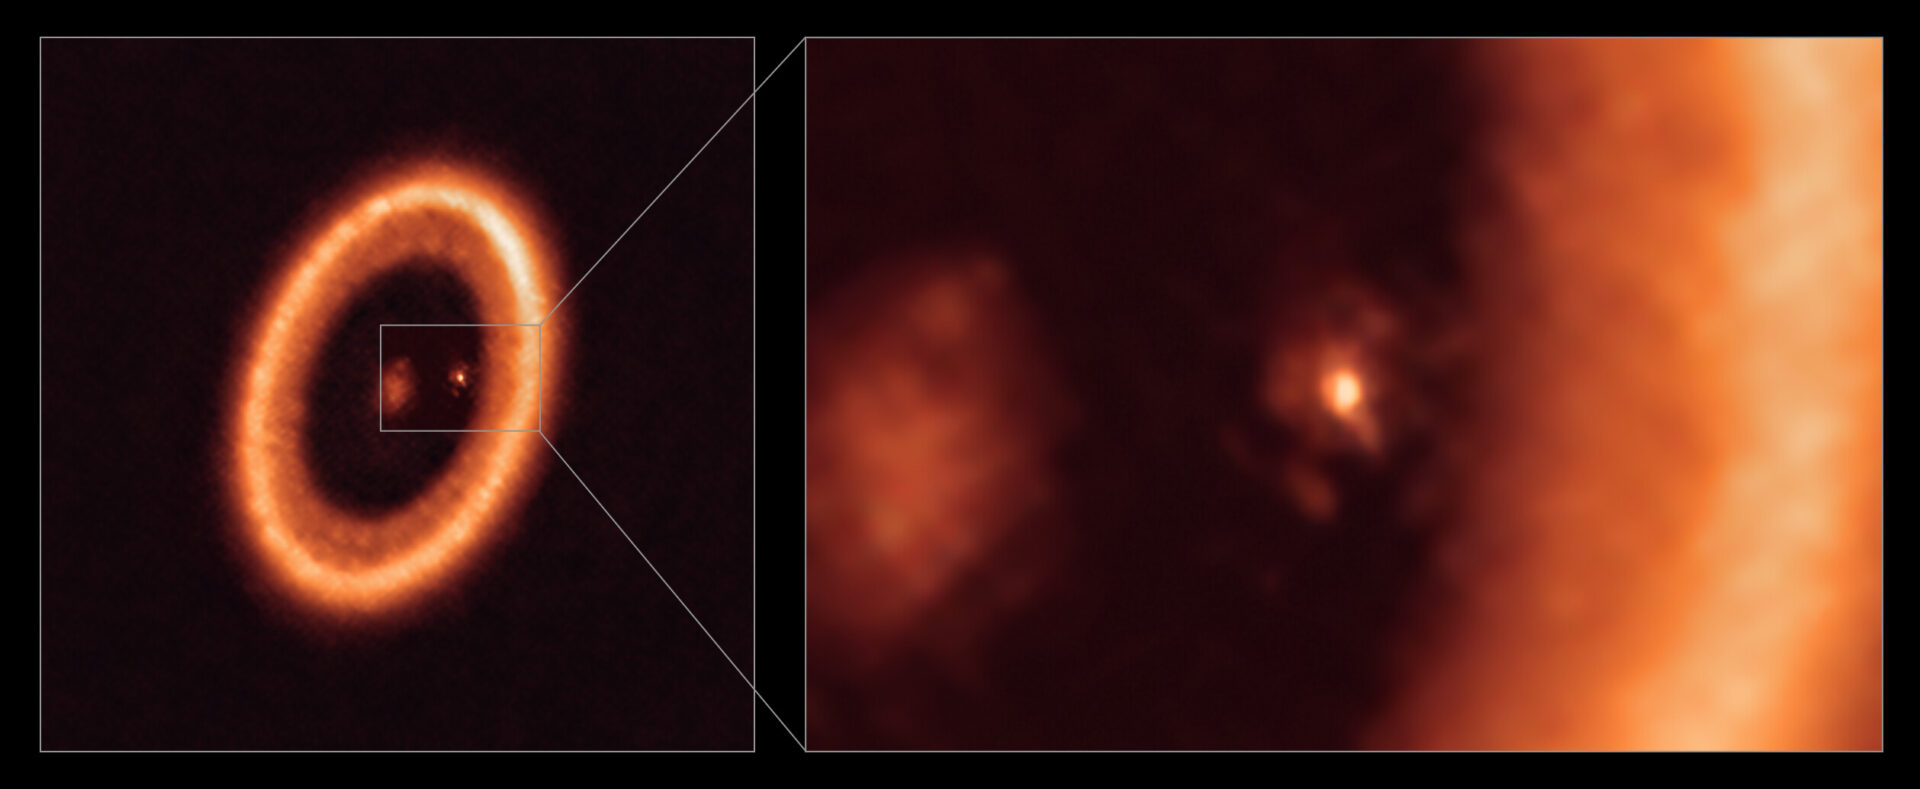 Esta imagen, tomada con el Atacama Large Millimeter/submillimeter Array (ALMA), del que ESO es socio, muestra una imagen de amplio campo (izquierda) y una ampliación (derecha) del disco lunar que rodea a PDS 70c, un planeta joven similar a Júpiter a casi 400 años luz de distancia. La ampliación muestra a PDS 70c y a su disco circumplanetario centrado y de frente, con el gran disco circunestelar en forma de anillo ocupando la mayor parte del lado derecho de la imagen. La estrella PDS 70 está en el centro de la imagen de amplio campo, a la izquierda. Se han descubierto dos planetas en el sistema, PDS 70c y PDS 70b, aunque este último no es visible en esta imagen. Han horadado una cavidad en el disco circunestelar mientras engullían material del propio disco, creciendo en tamaño. En este proceso, PDS 70c adquirió su propio disco circumplanetario, que contribuye al crecimiento del planeta y donde se pueden formar lunas. Este disco circumplanetario es tan grande como la distancia Sol-Tierra y tiene suficiente masa para formar hasta tres satélites del tamaño de la Luna. Crédito: ALMA (ESO/NAOJ/NRAO)/Benisty et al.